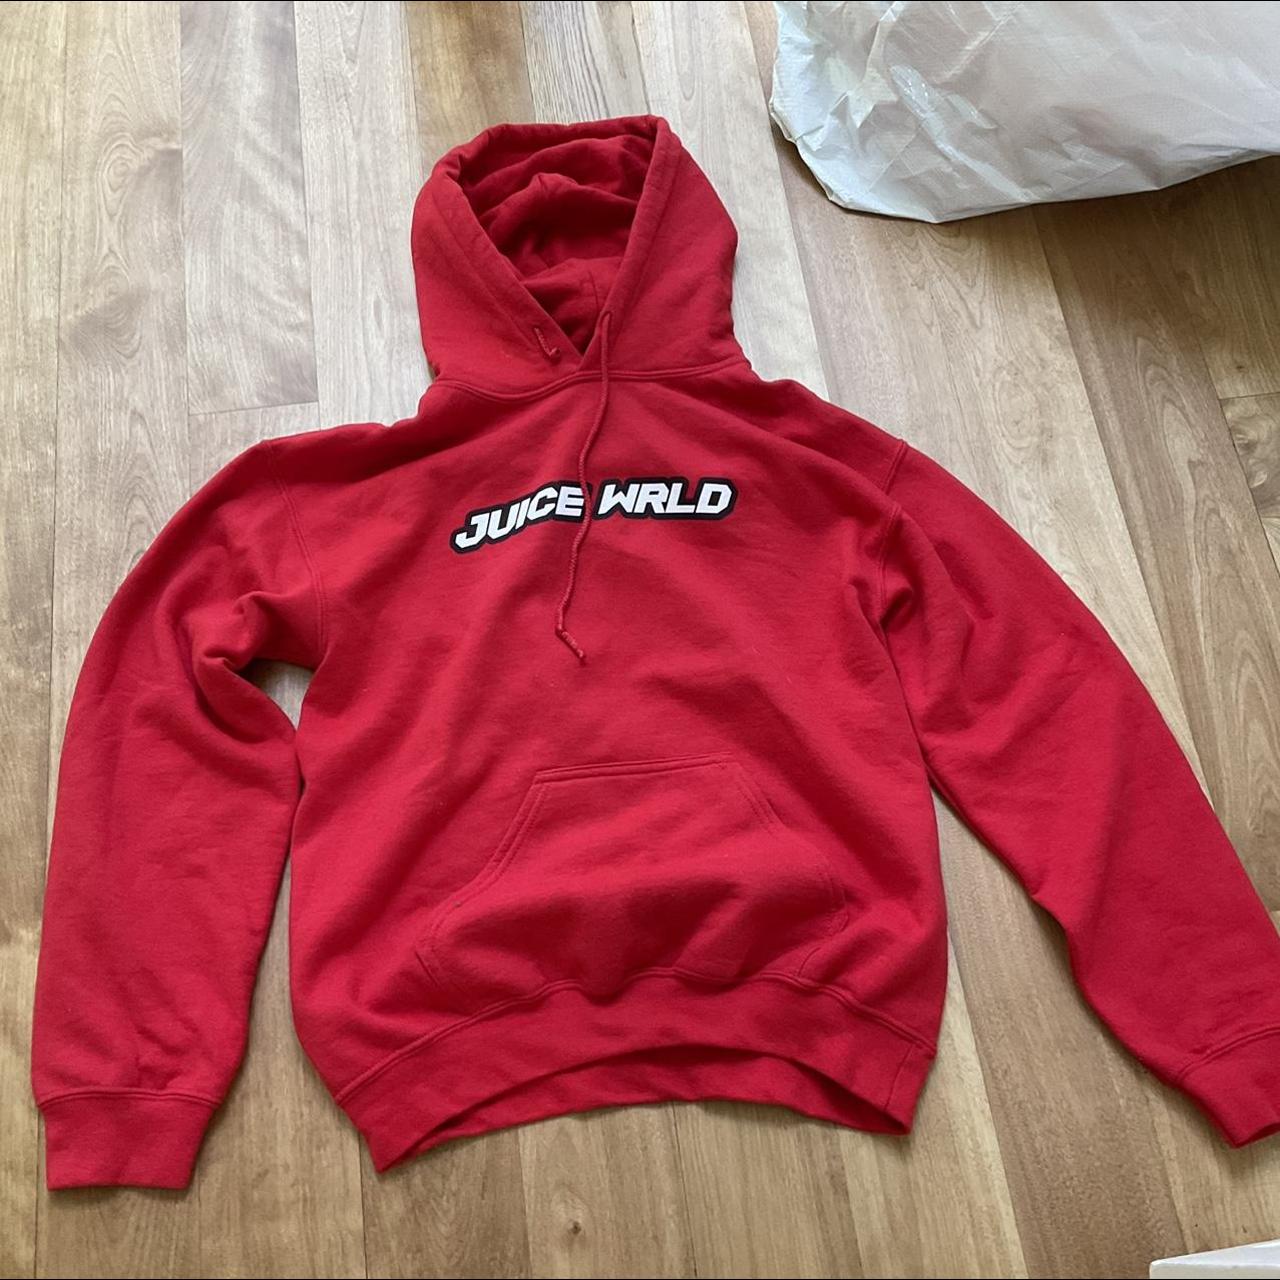 Limited edition Juice WRLD hoodie